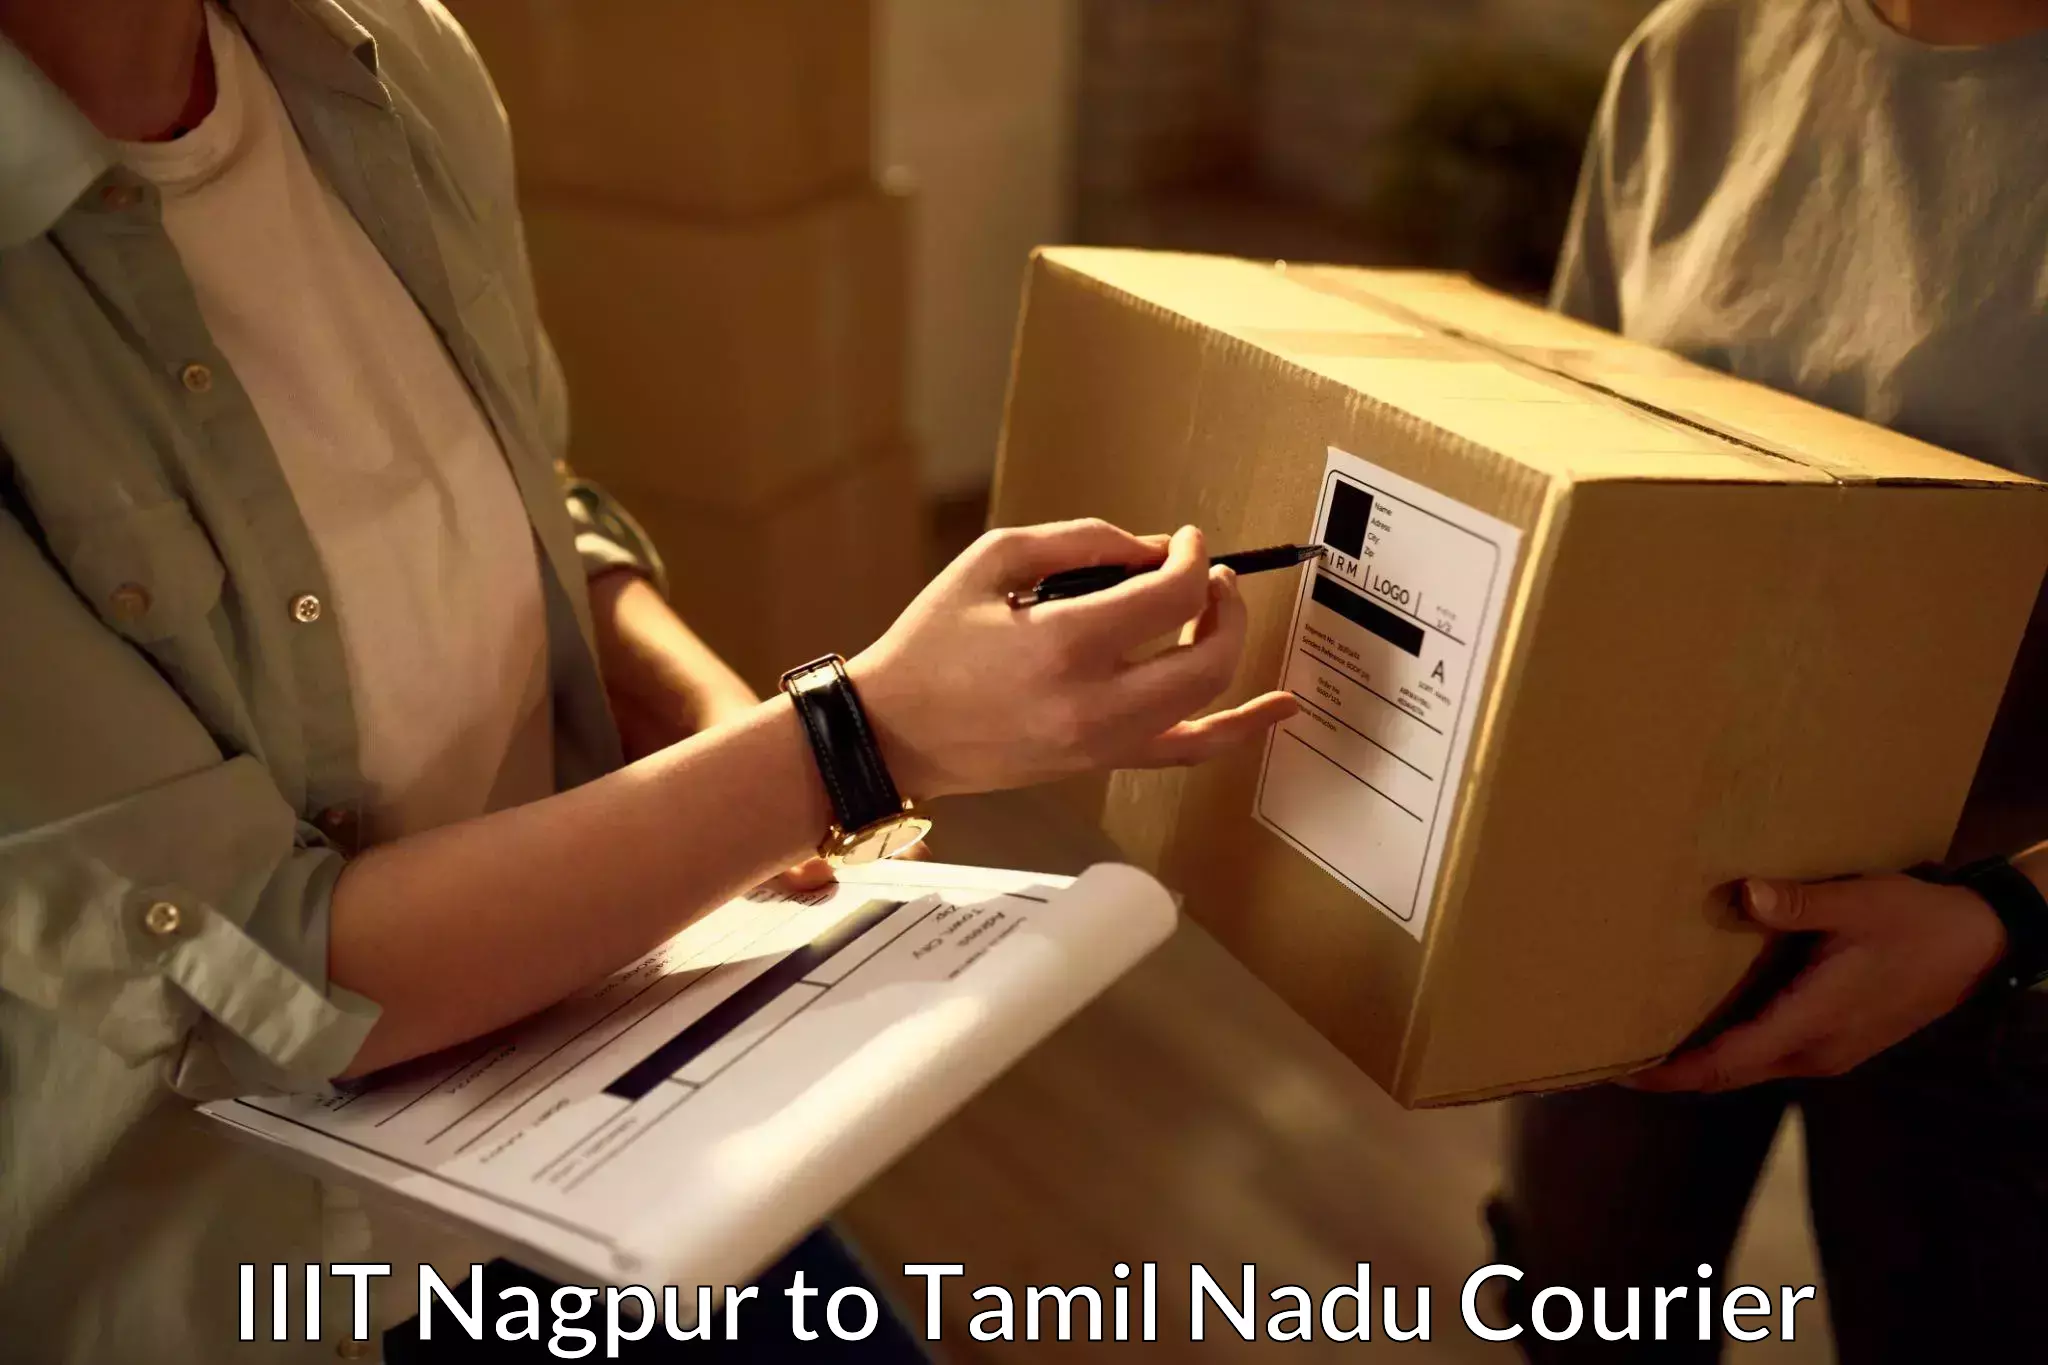 Reliable logistics providers IIIT Nagpur to Krishnagiri